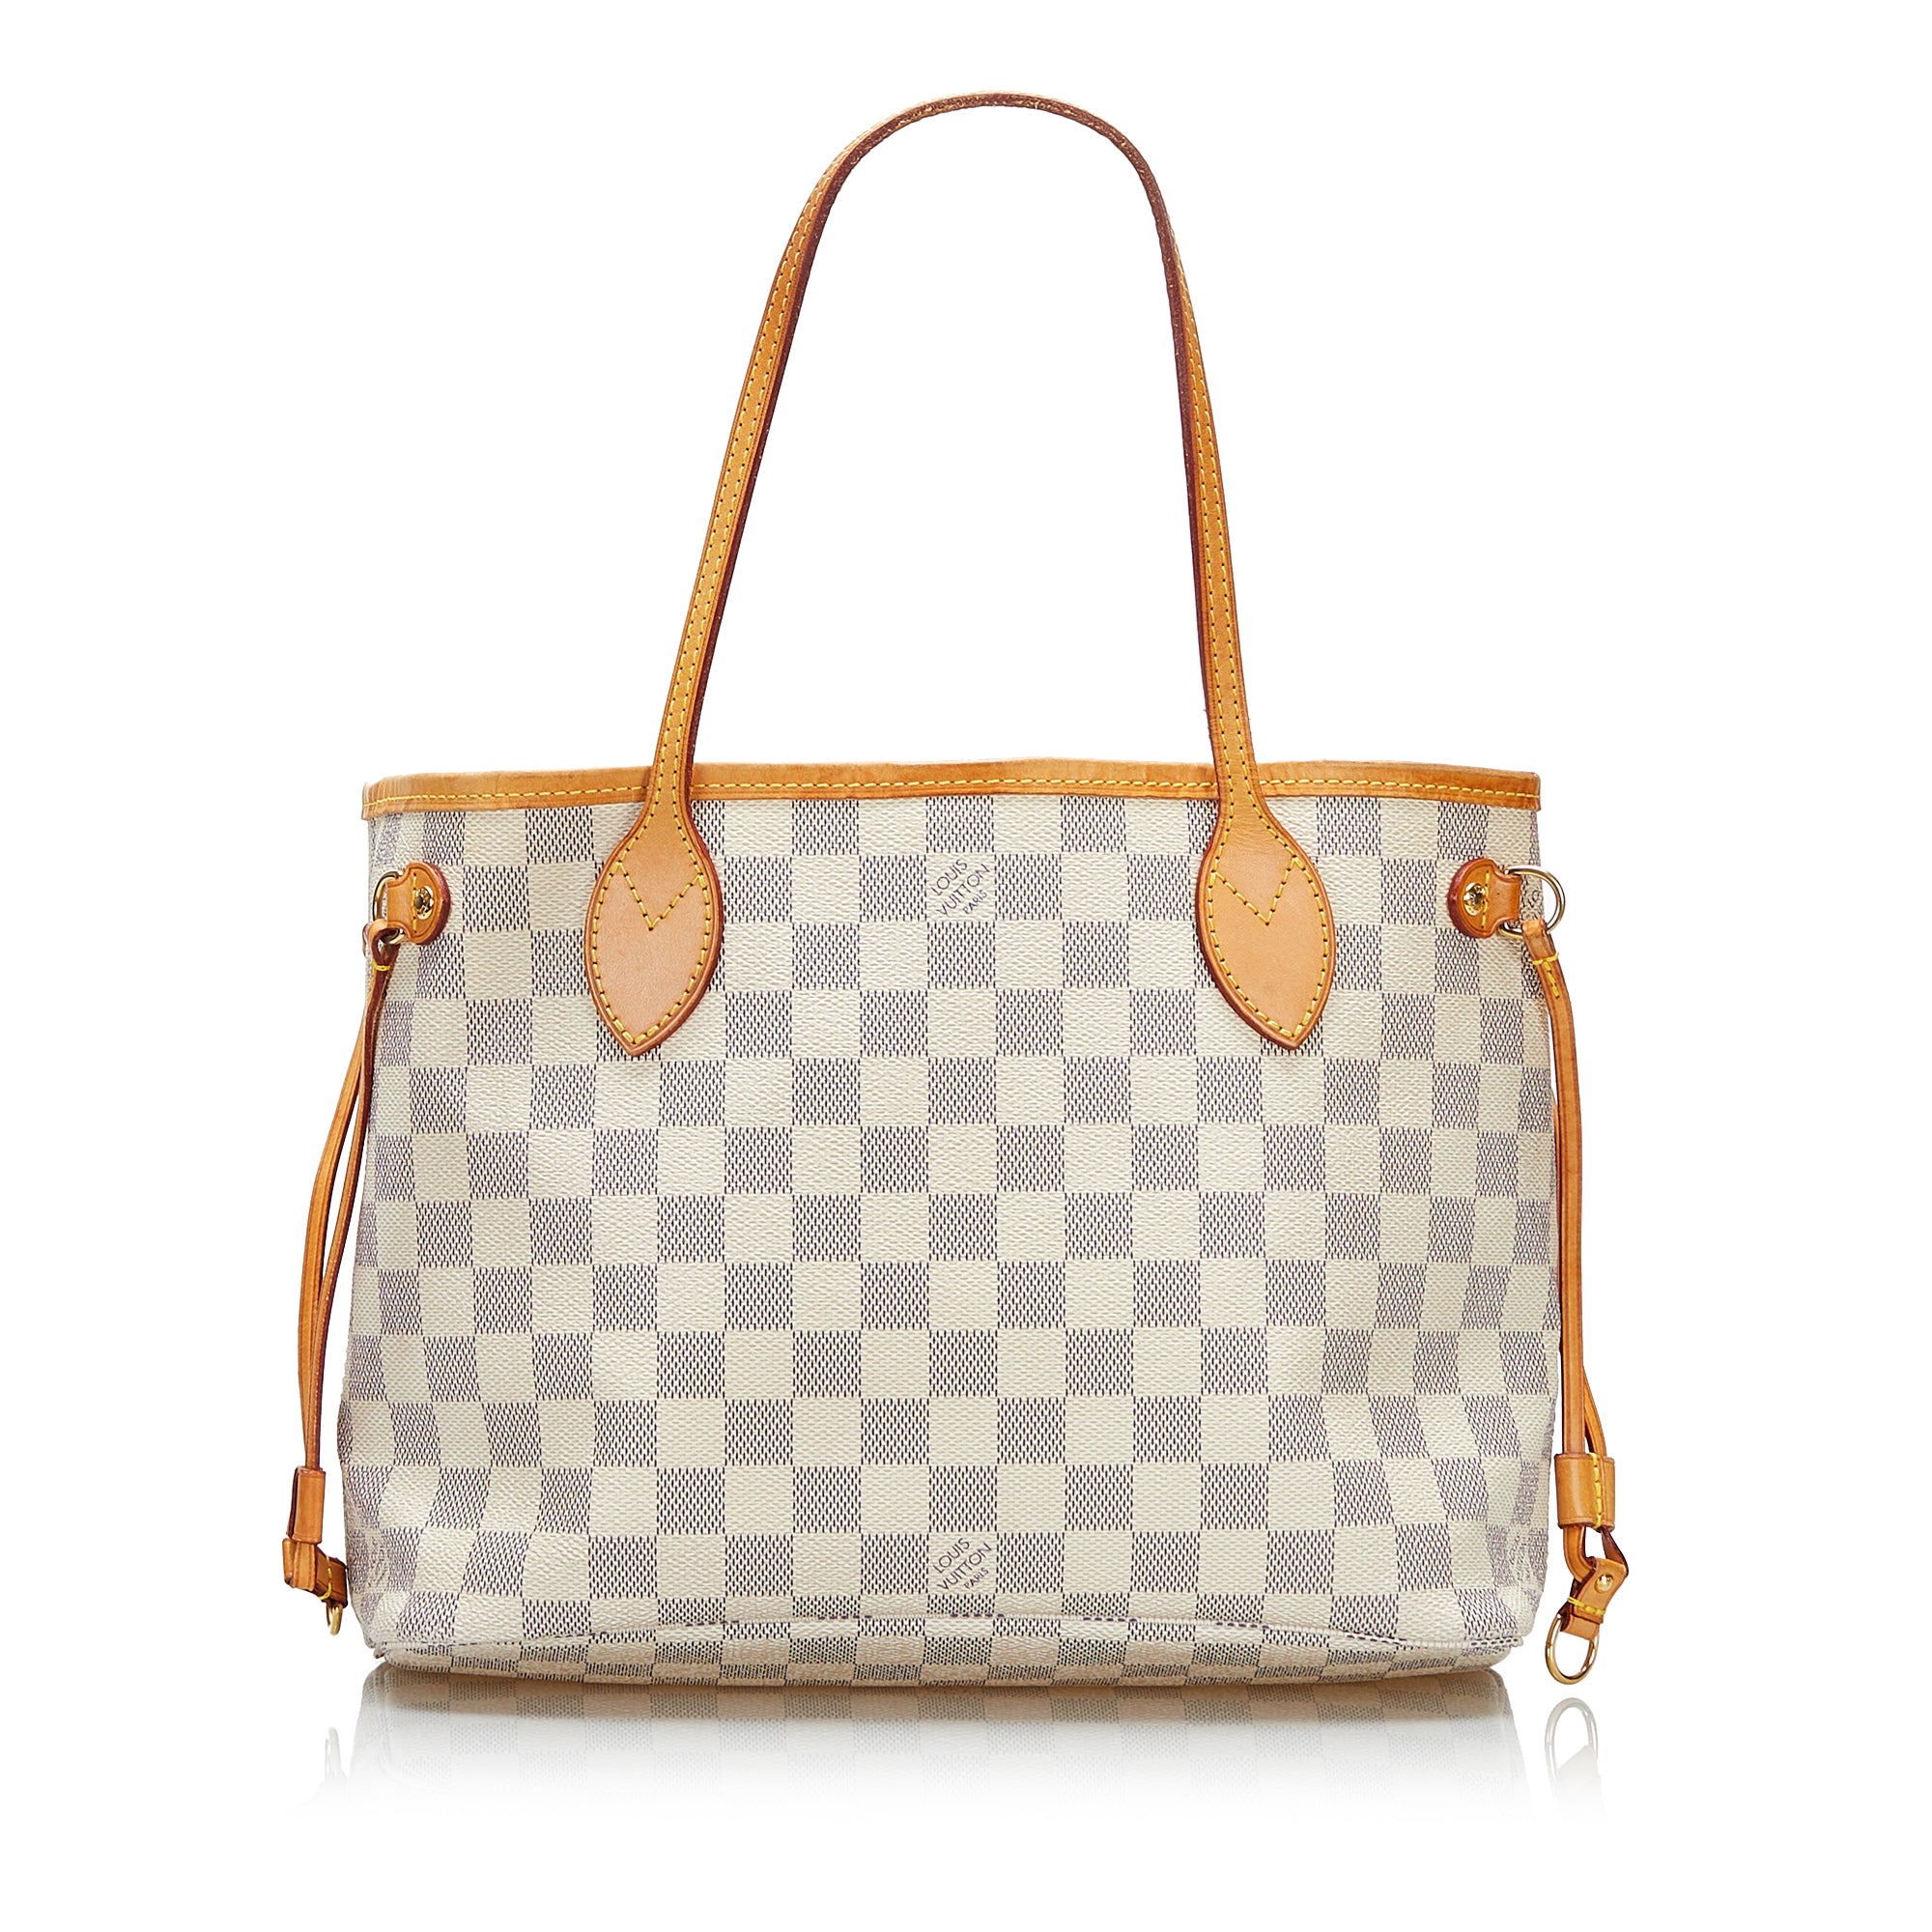 Louis Vuitton vintage bags  Our luxury Louis Vuitton secondhand  secondhand  bags  Vintega